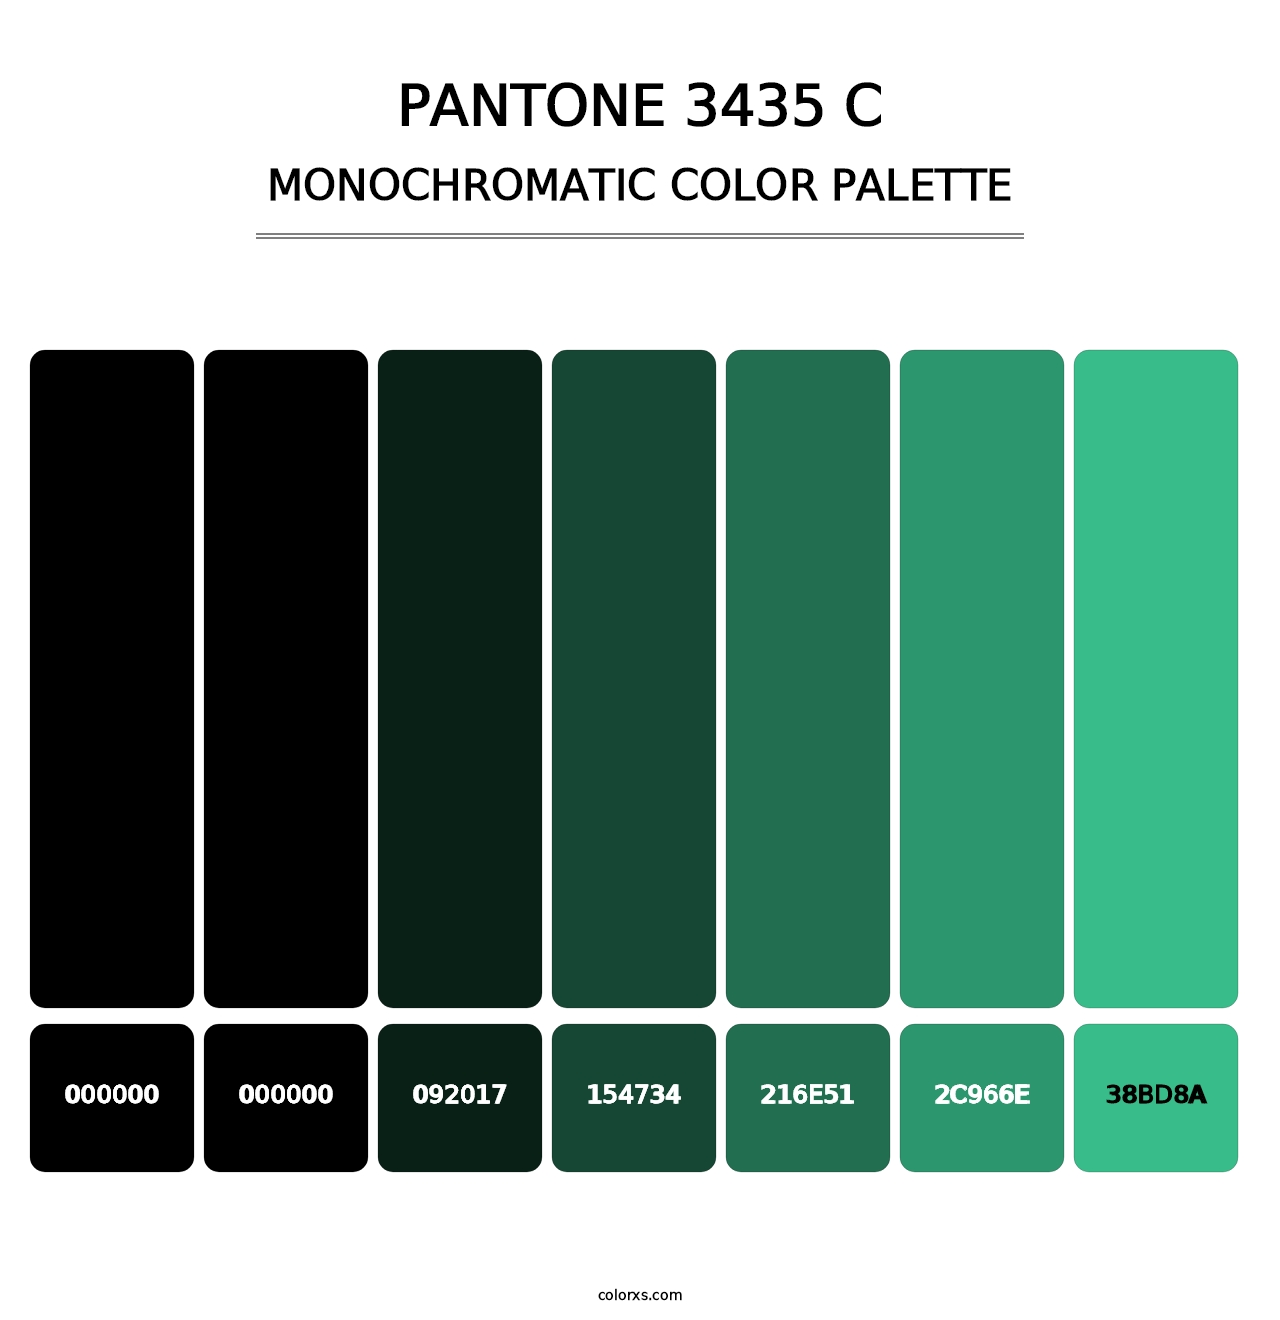 PANTONE 3435 C - Monochromatic Color Palette